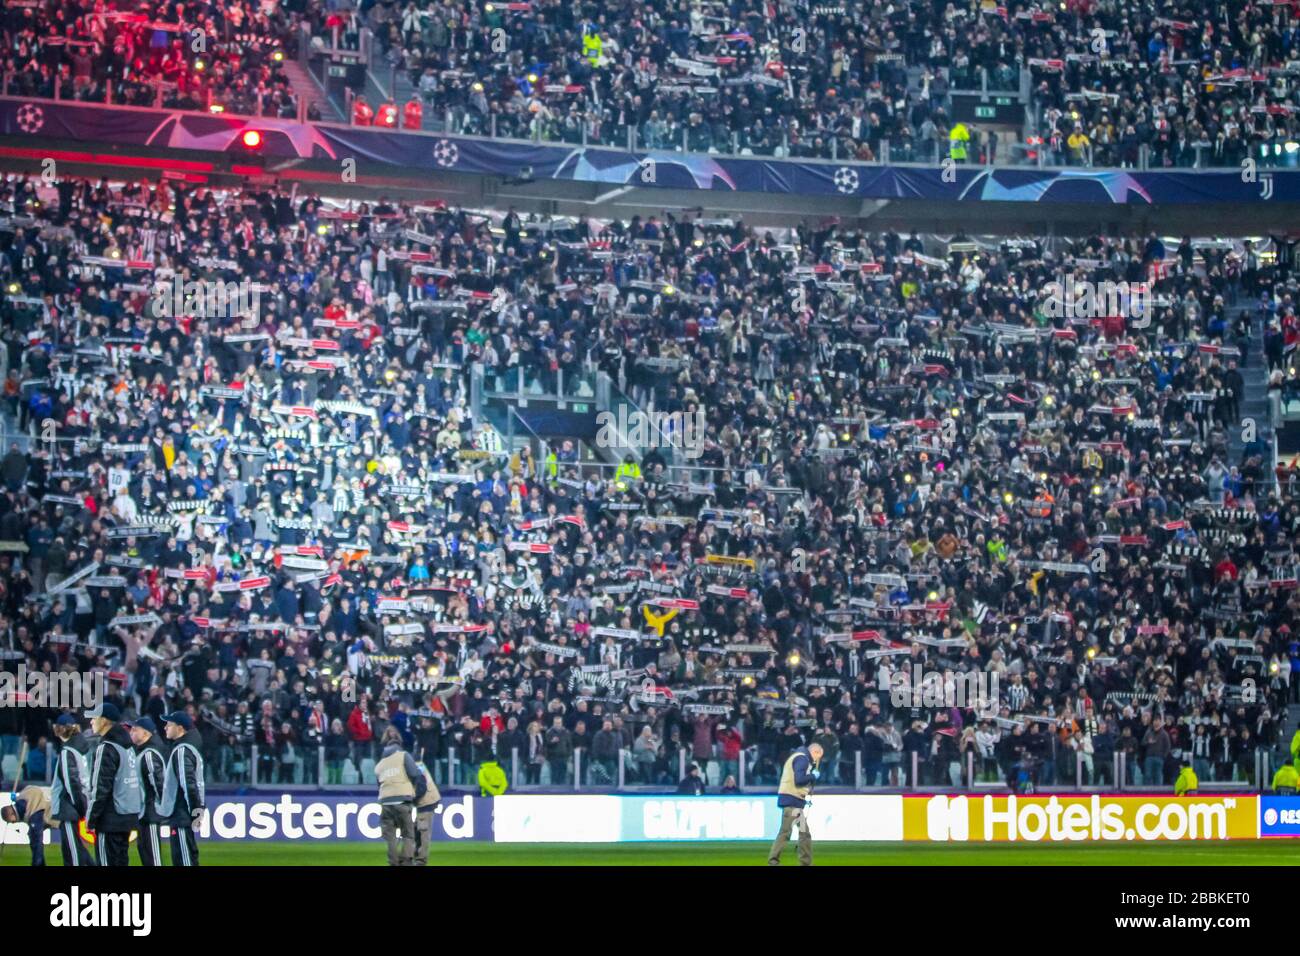 Seguidores de la Juventus durante la temporada de fútbol 2019/20 imágenes simbólicas - crédito de la foto Fabrizio Carabelli /LM/ Foto de stock